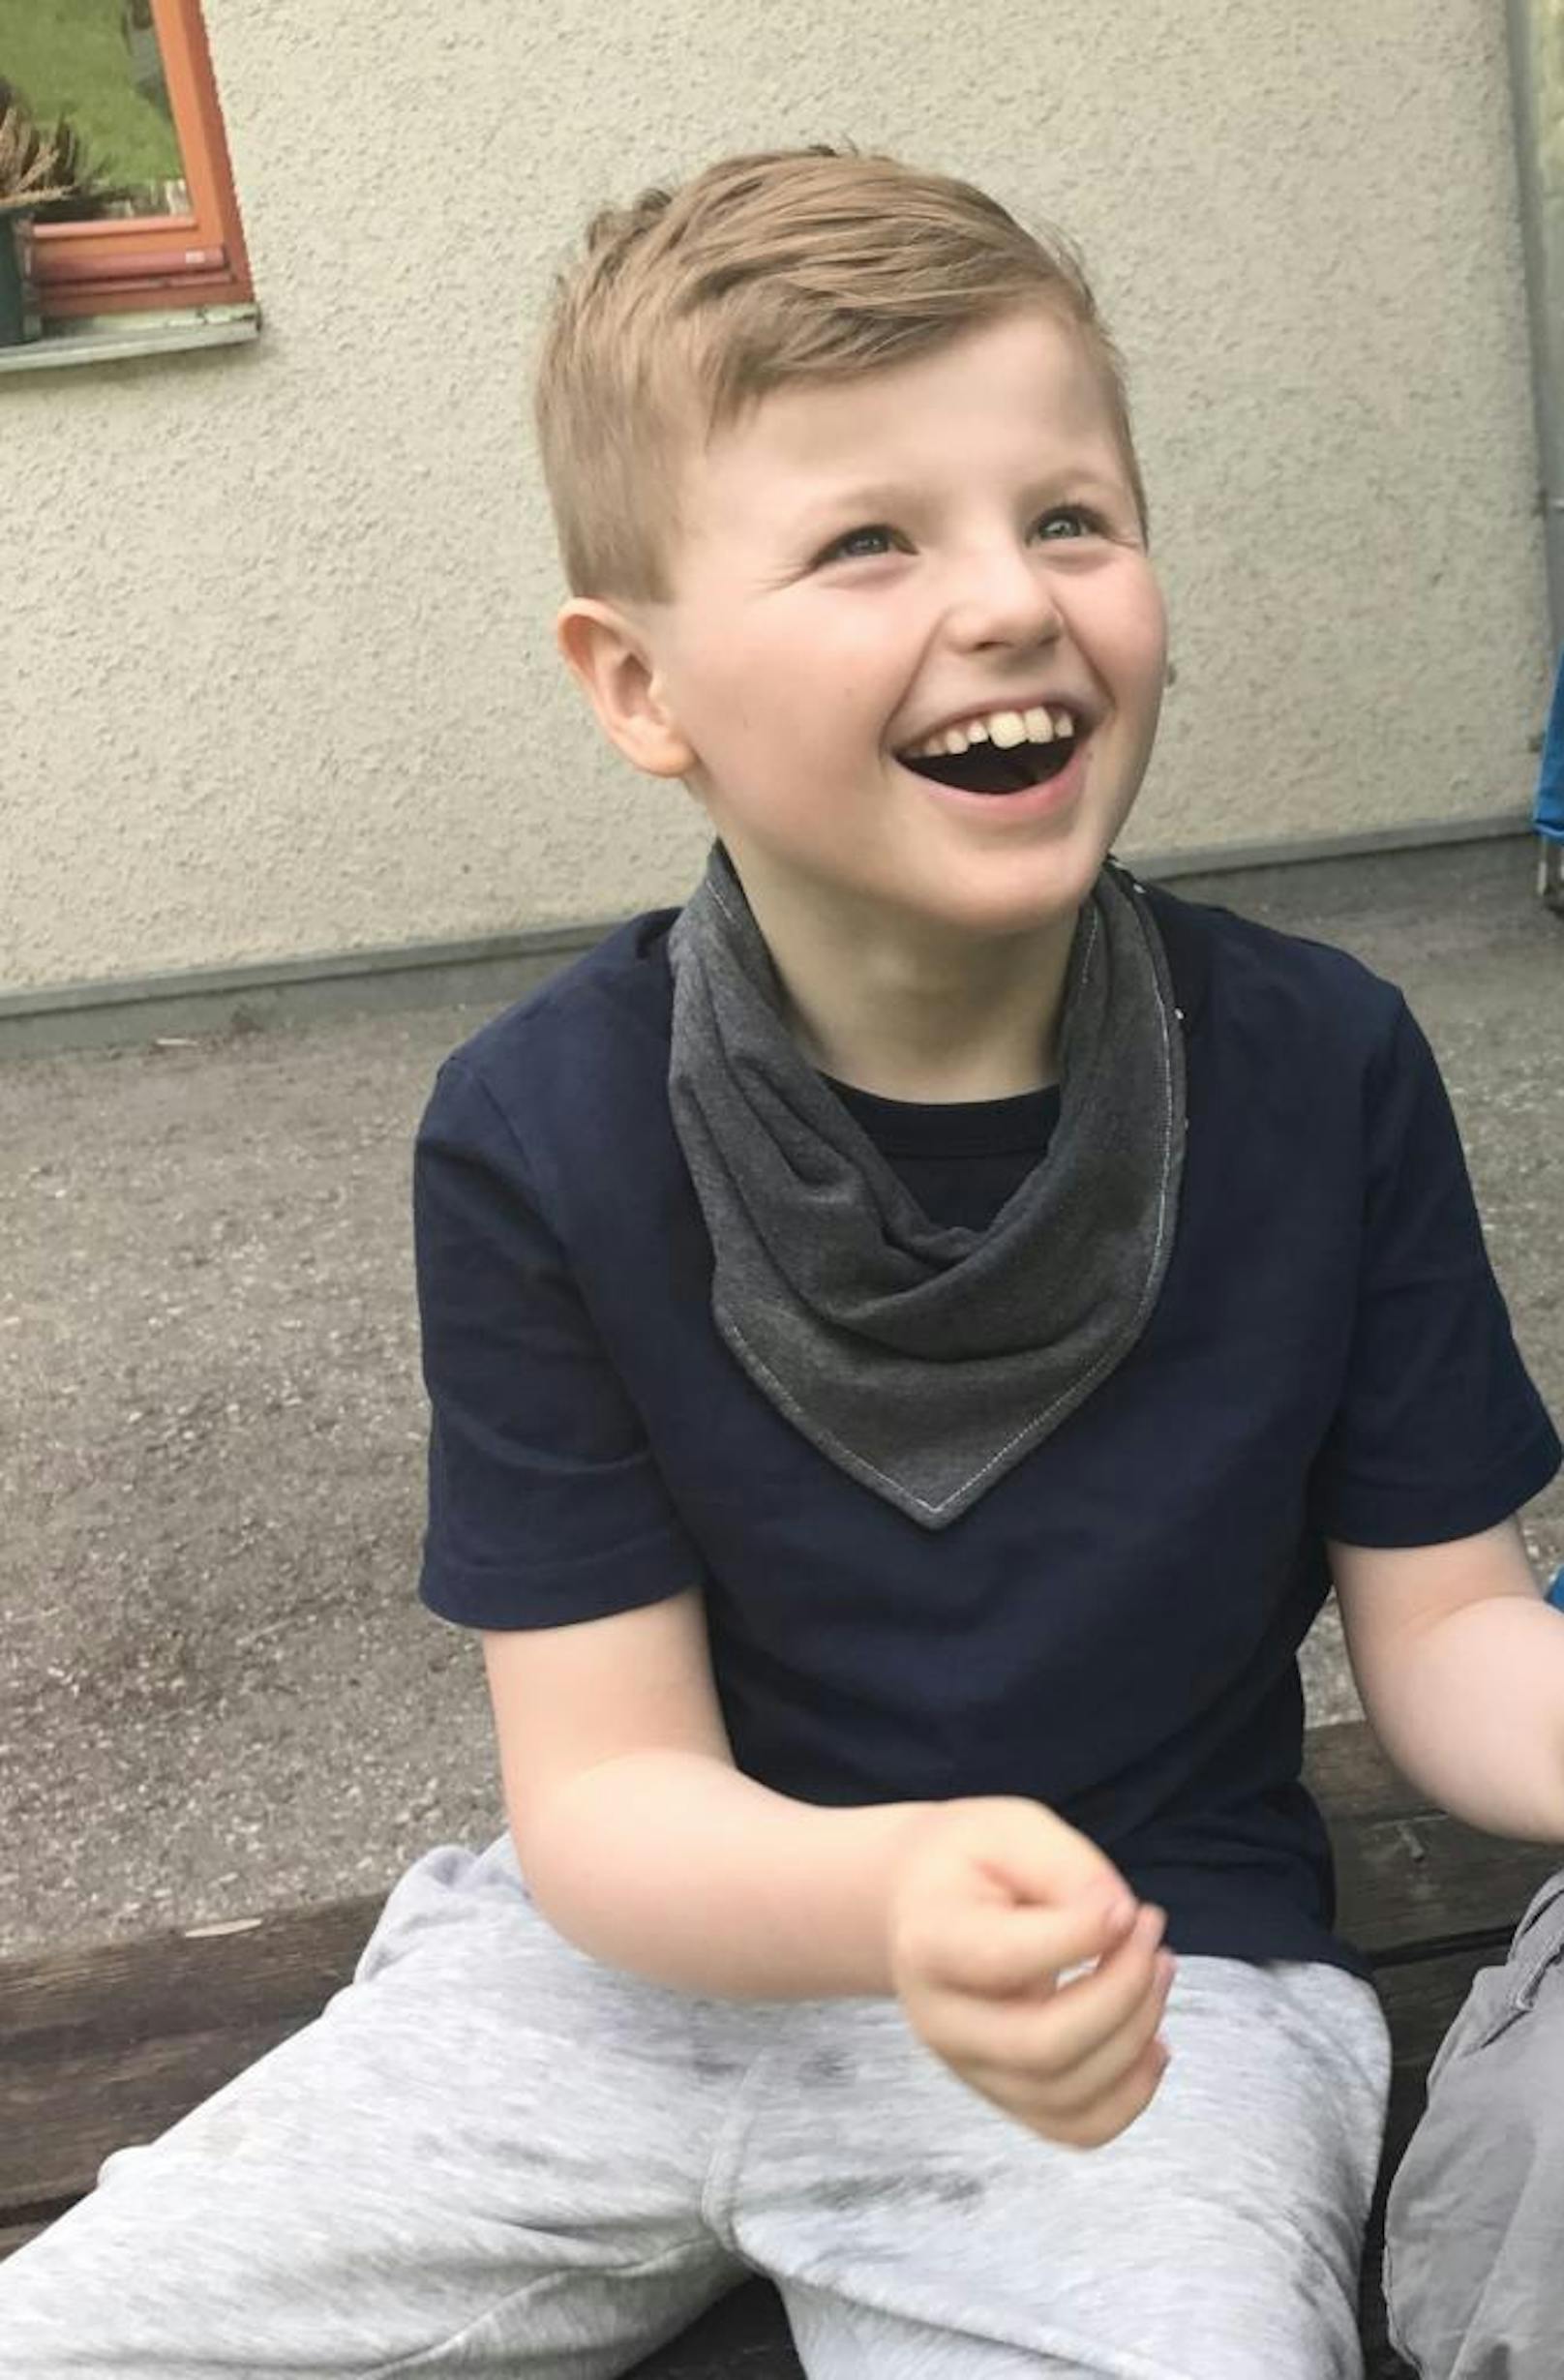 Der 8-Jährige ist mit dem Angelman-Syndrom geboren. Häufiges Lachen ist charakteristisch.